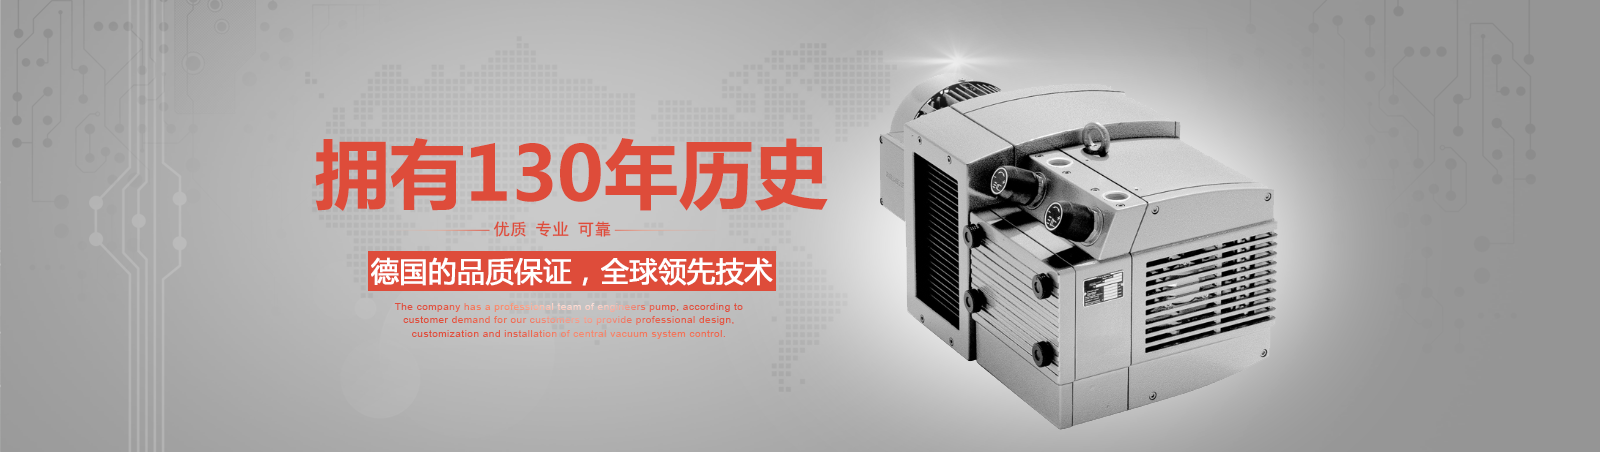 上海锋循机电科技有限公司